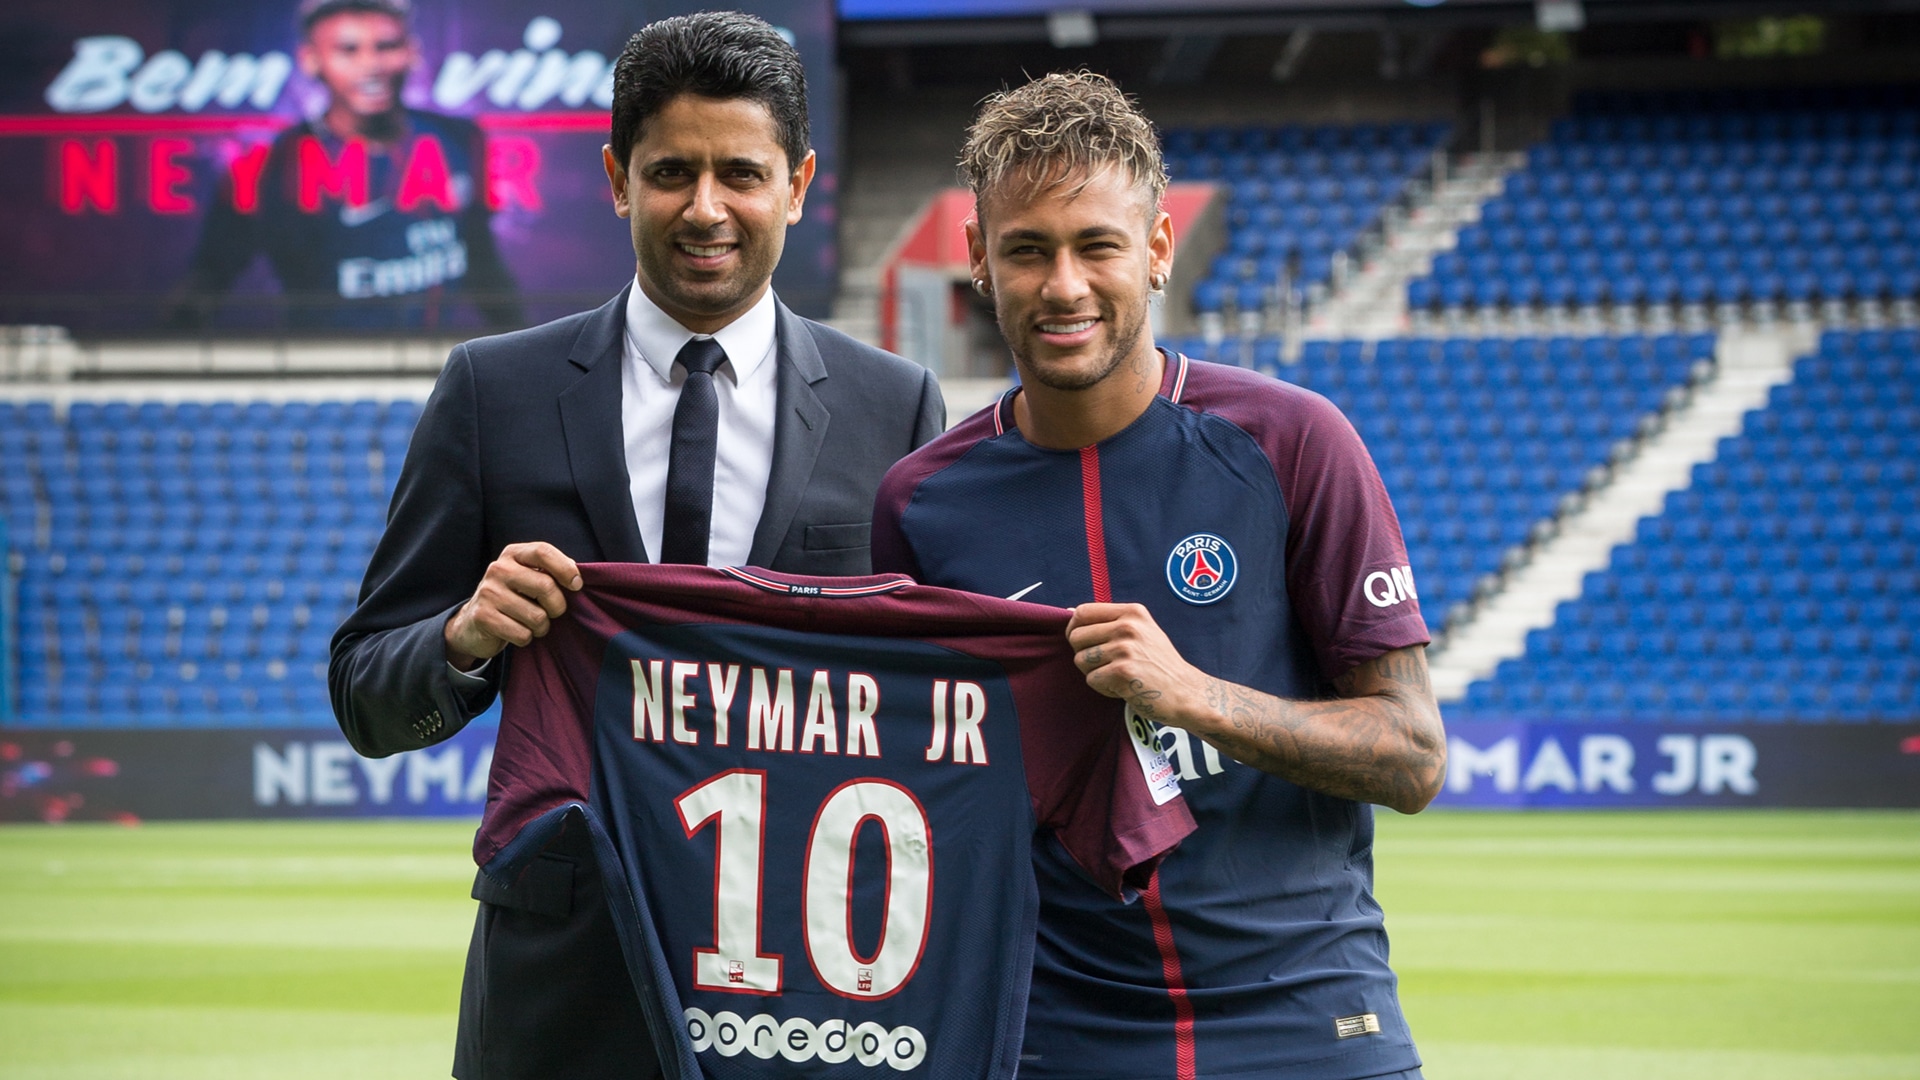 Paris Saint-Germains katarischer Boss Nasser Al-Khelaifi, präsentiert 2017 Neymars Trikot. Der brasilianische Spieler war für 222 Millionen nach Paris gekommen, ein absoluter Rekord. Al-Khelaifi ist zudem Vorsitzender von Qatar Sports Investments